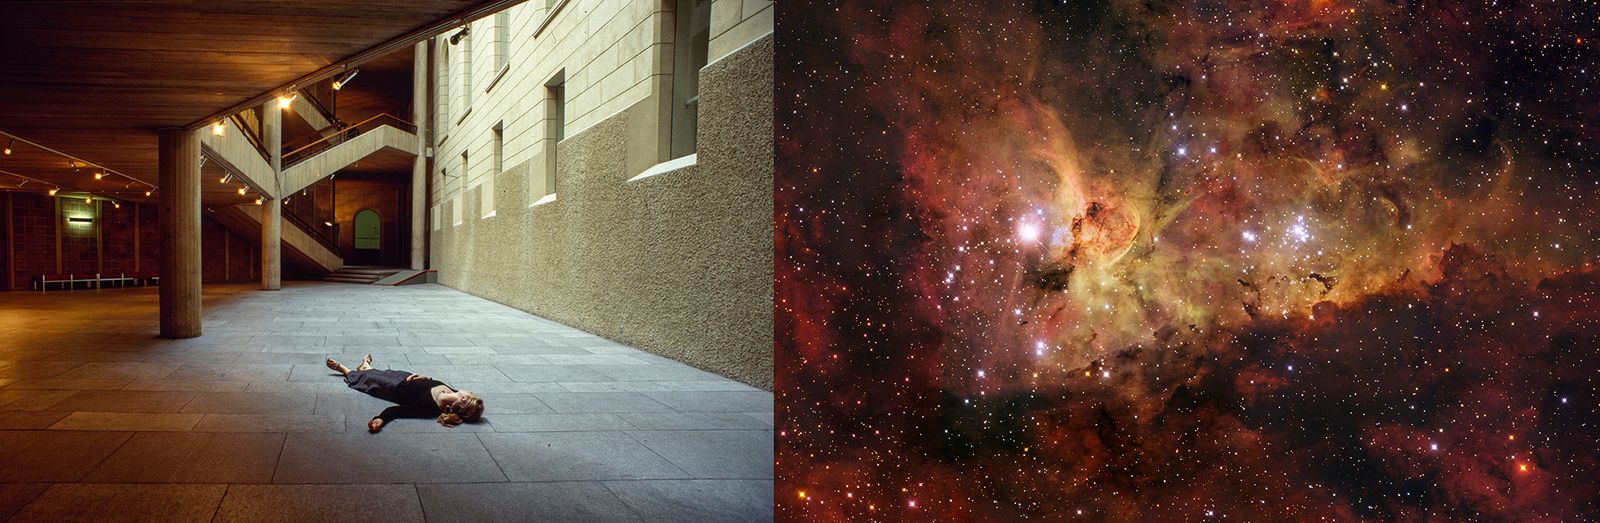 © Julia Horbaschk - Carina Nebula, NASA, ESA, N. Smith (U. California, Berkeley) et al., + The Hubble Heritage Team (STScI/AURA)